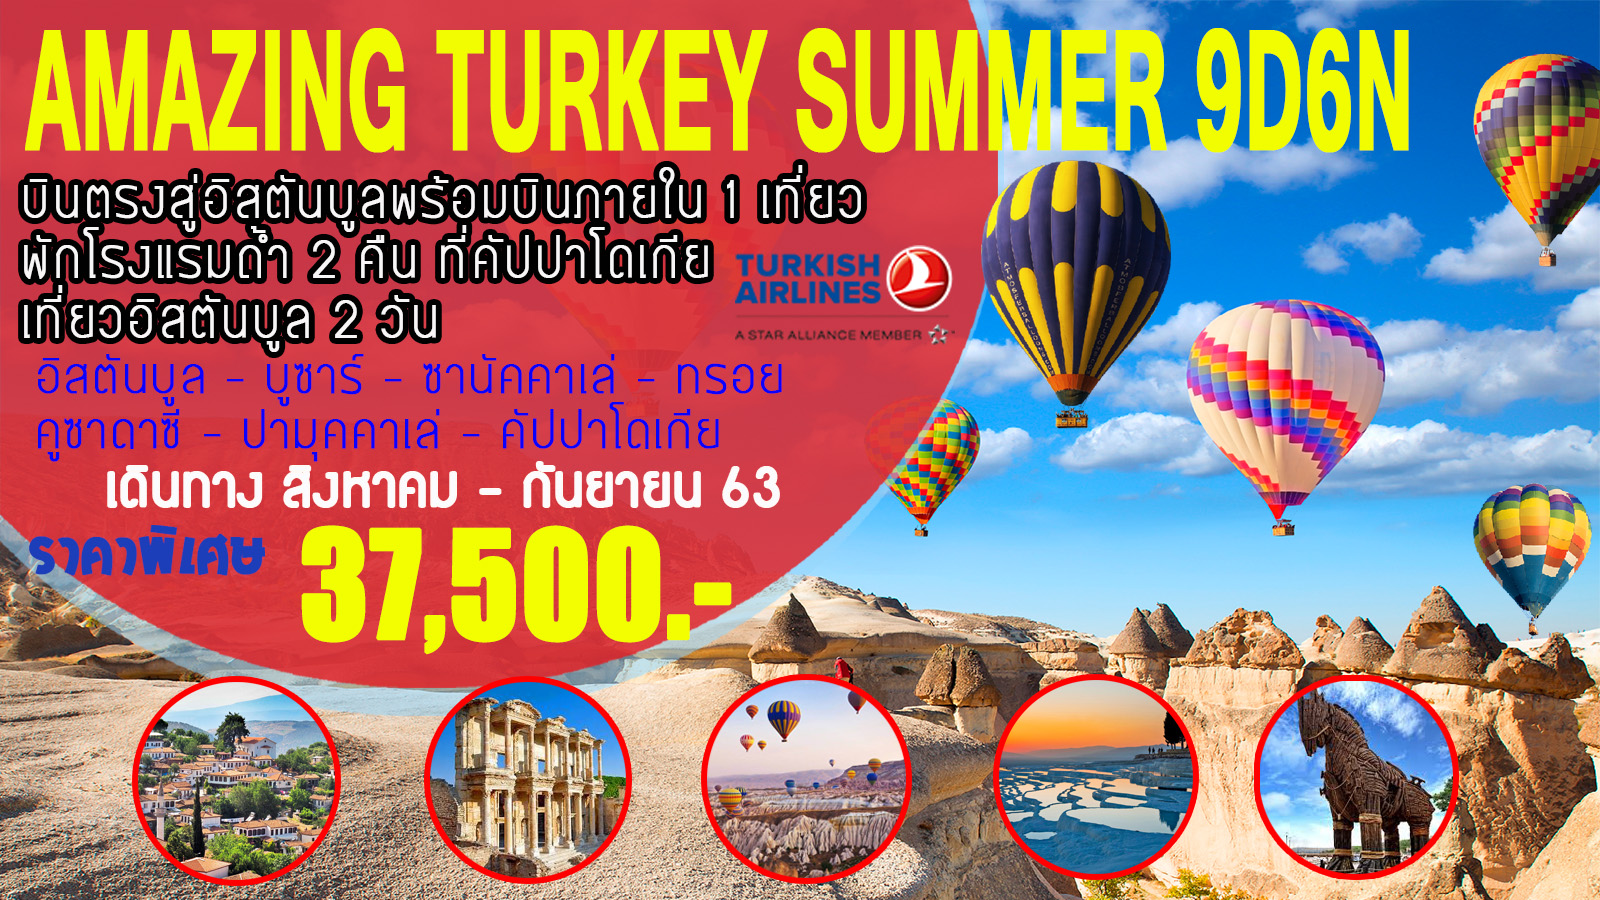 ทัวร์ตุรกี  : AMAZING TURKEY SUMMER